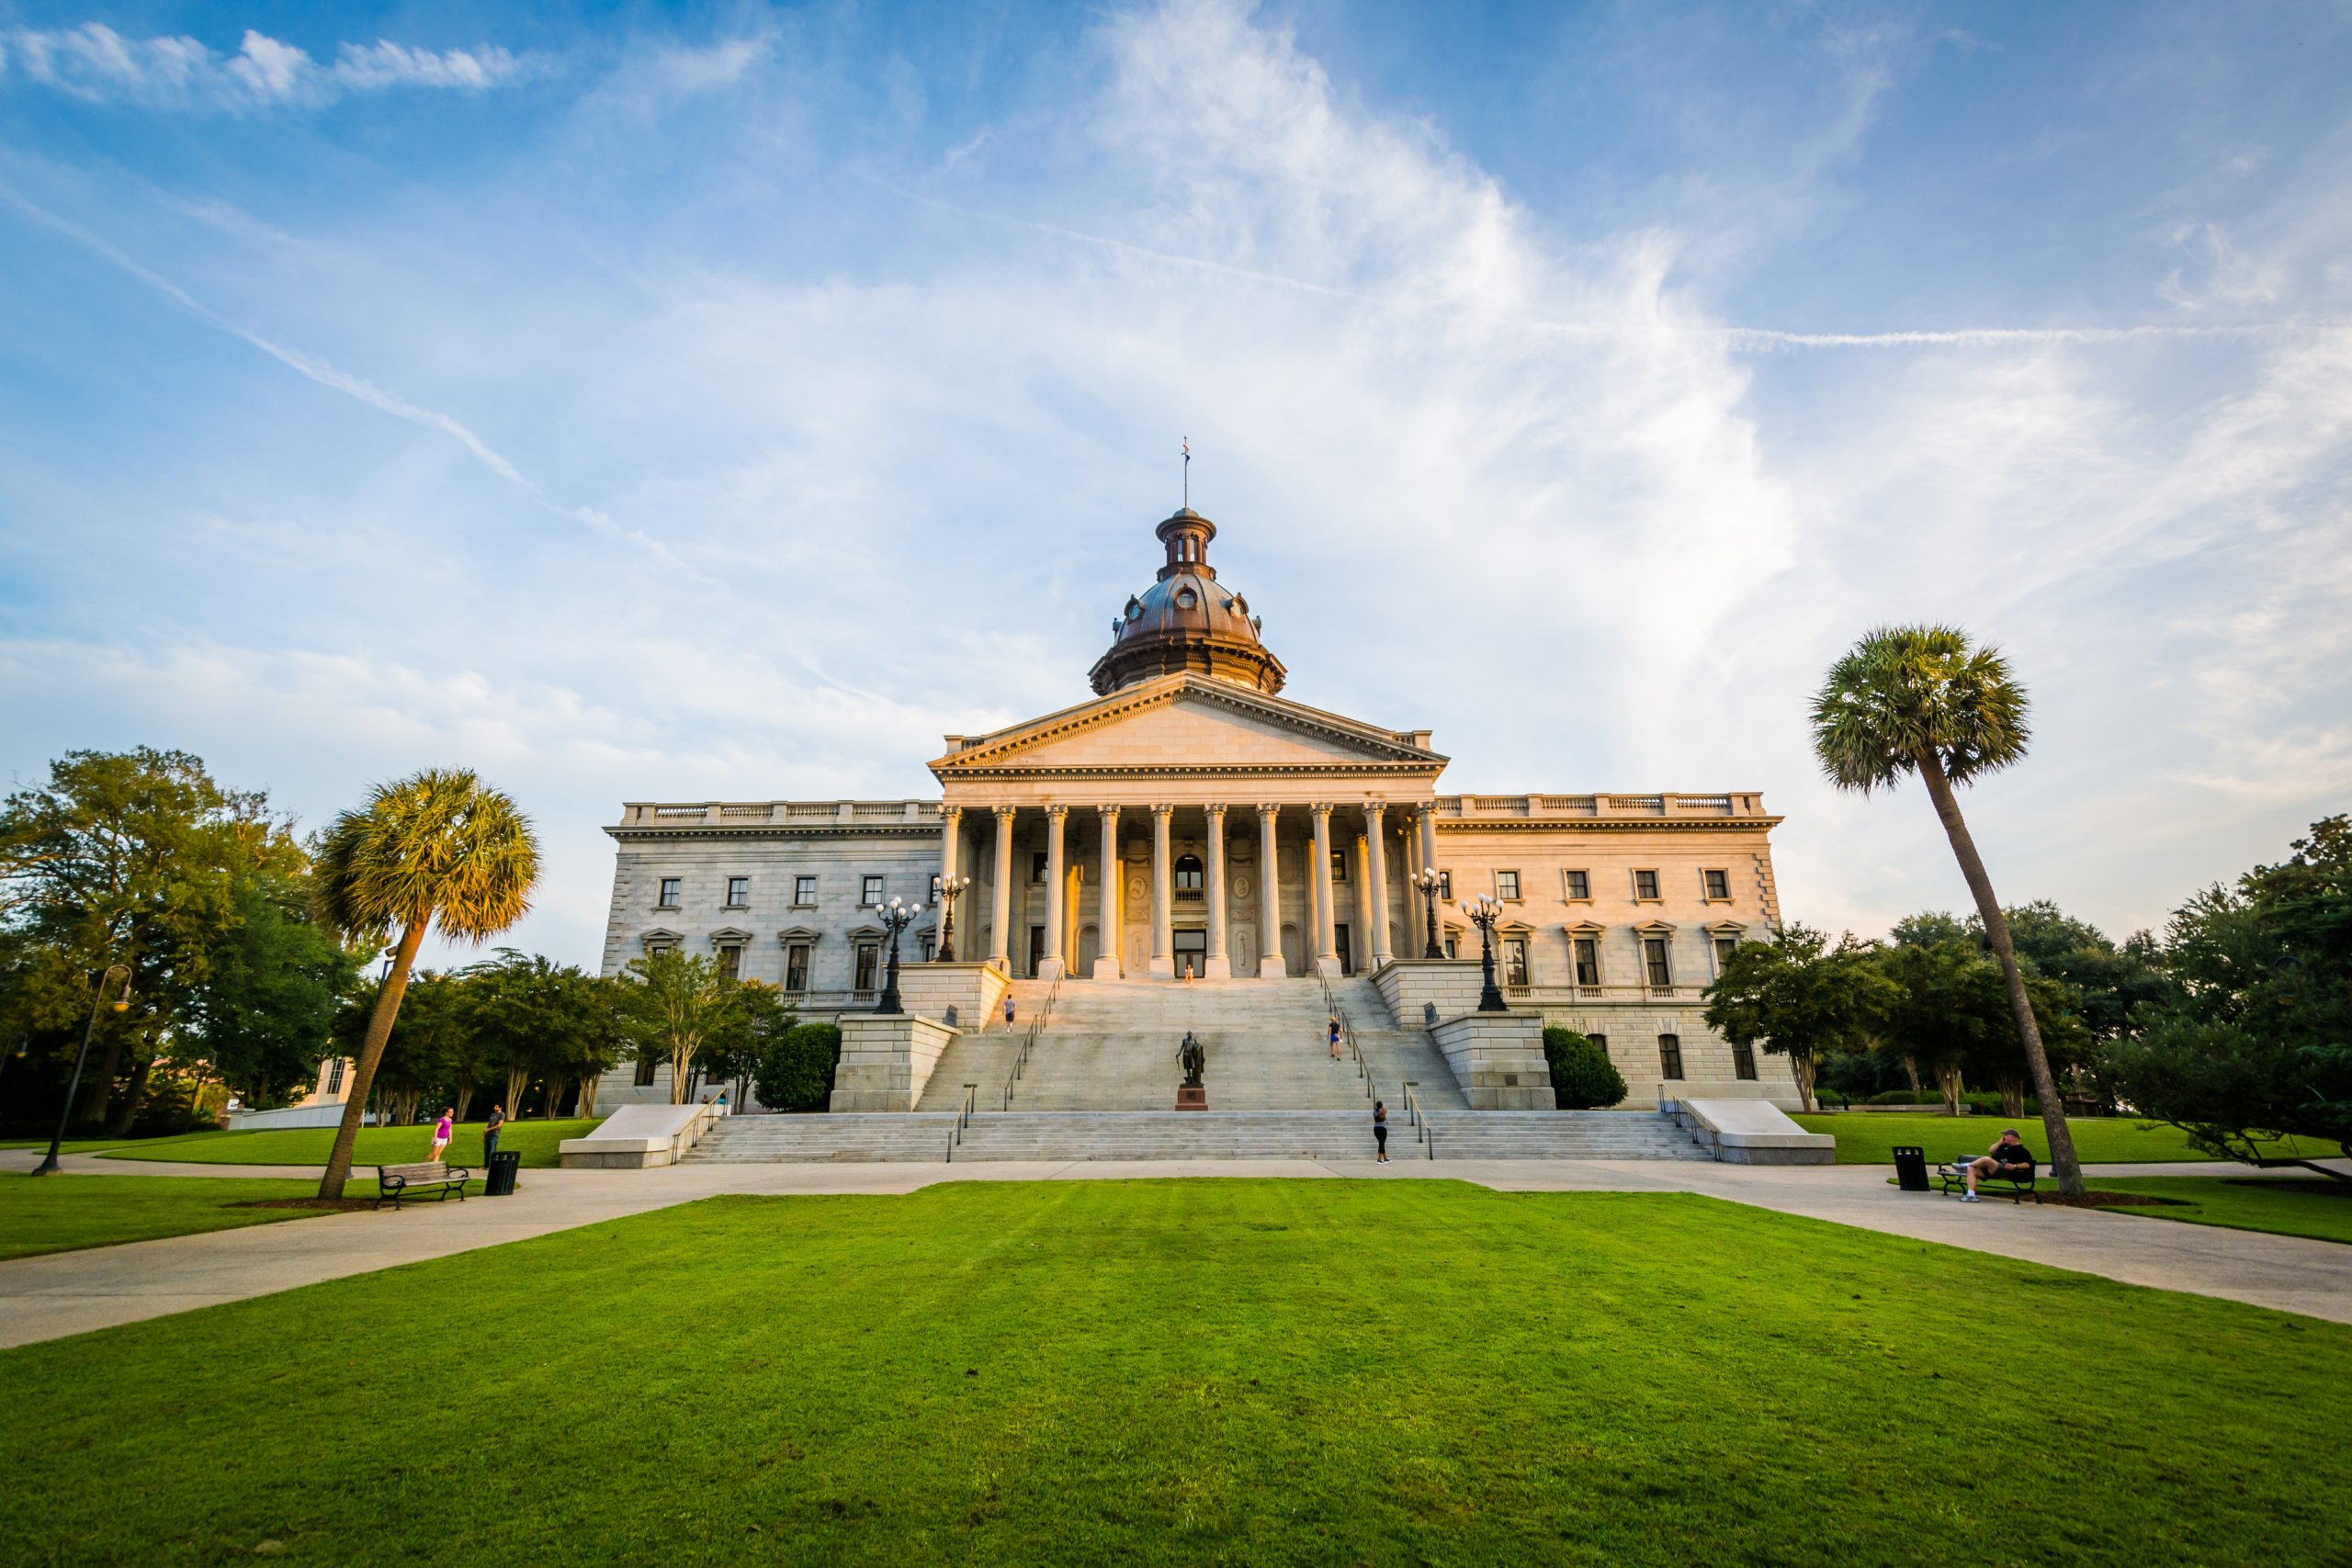 South Carolina State House on a sunny day